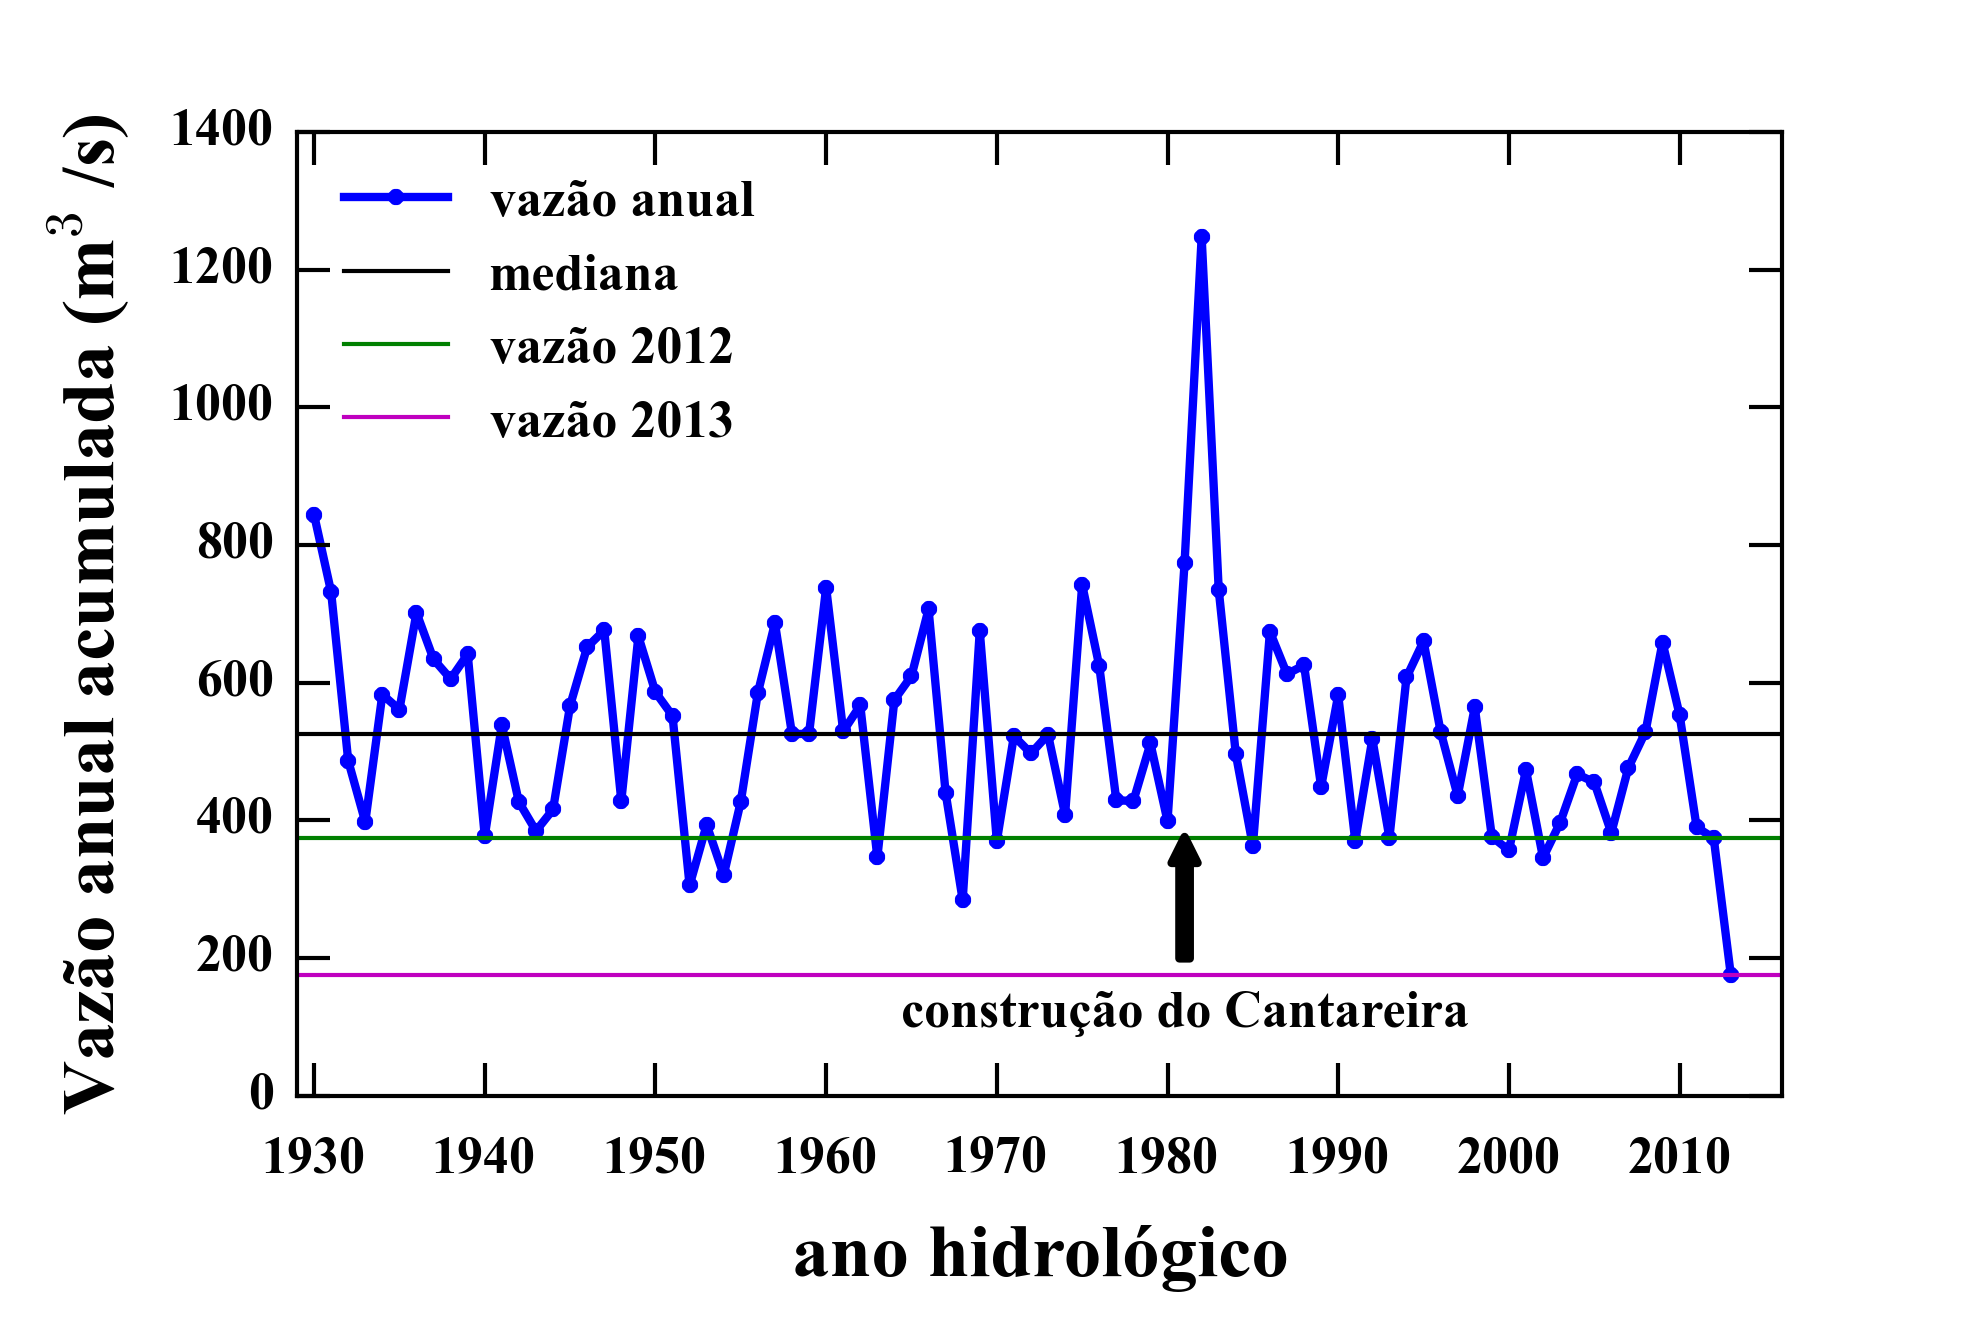 vazão anual média de 1930 a 2014